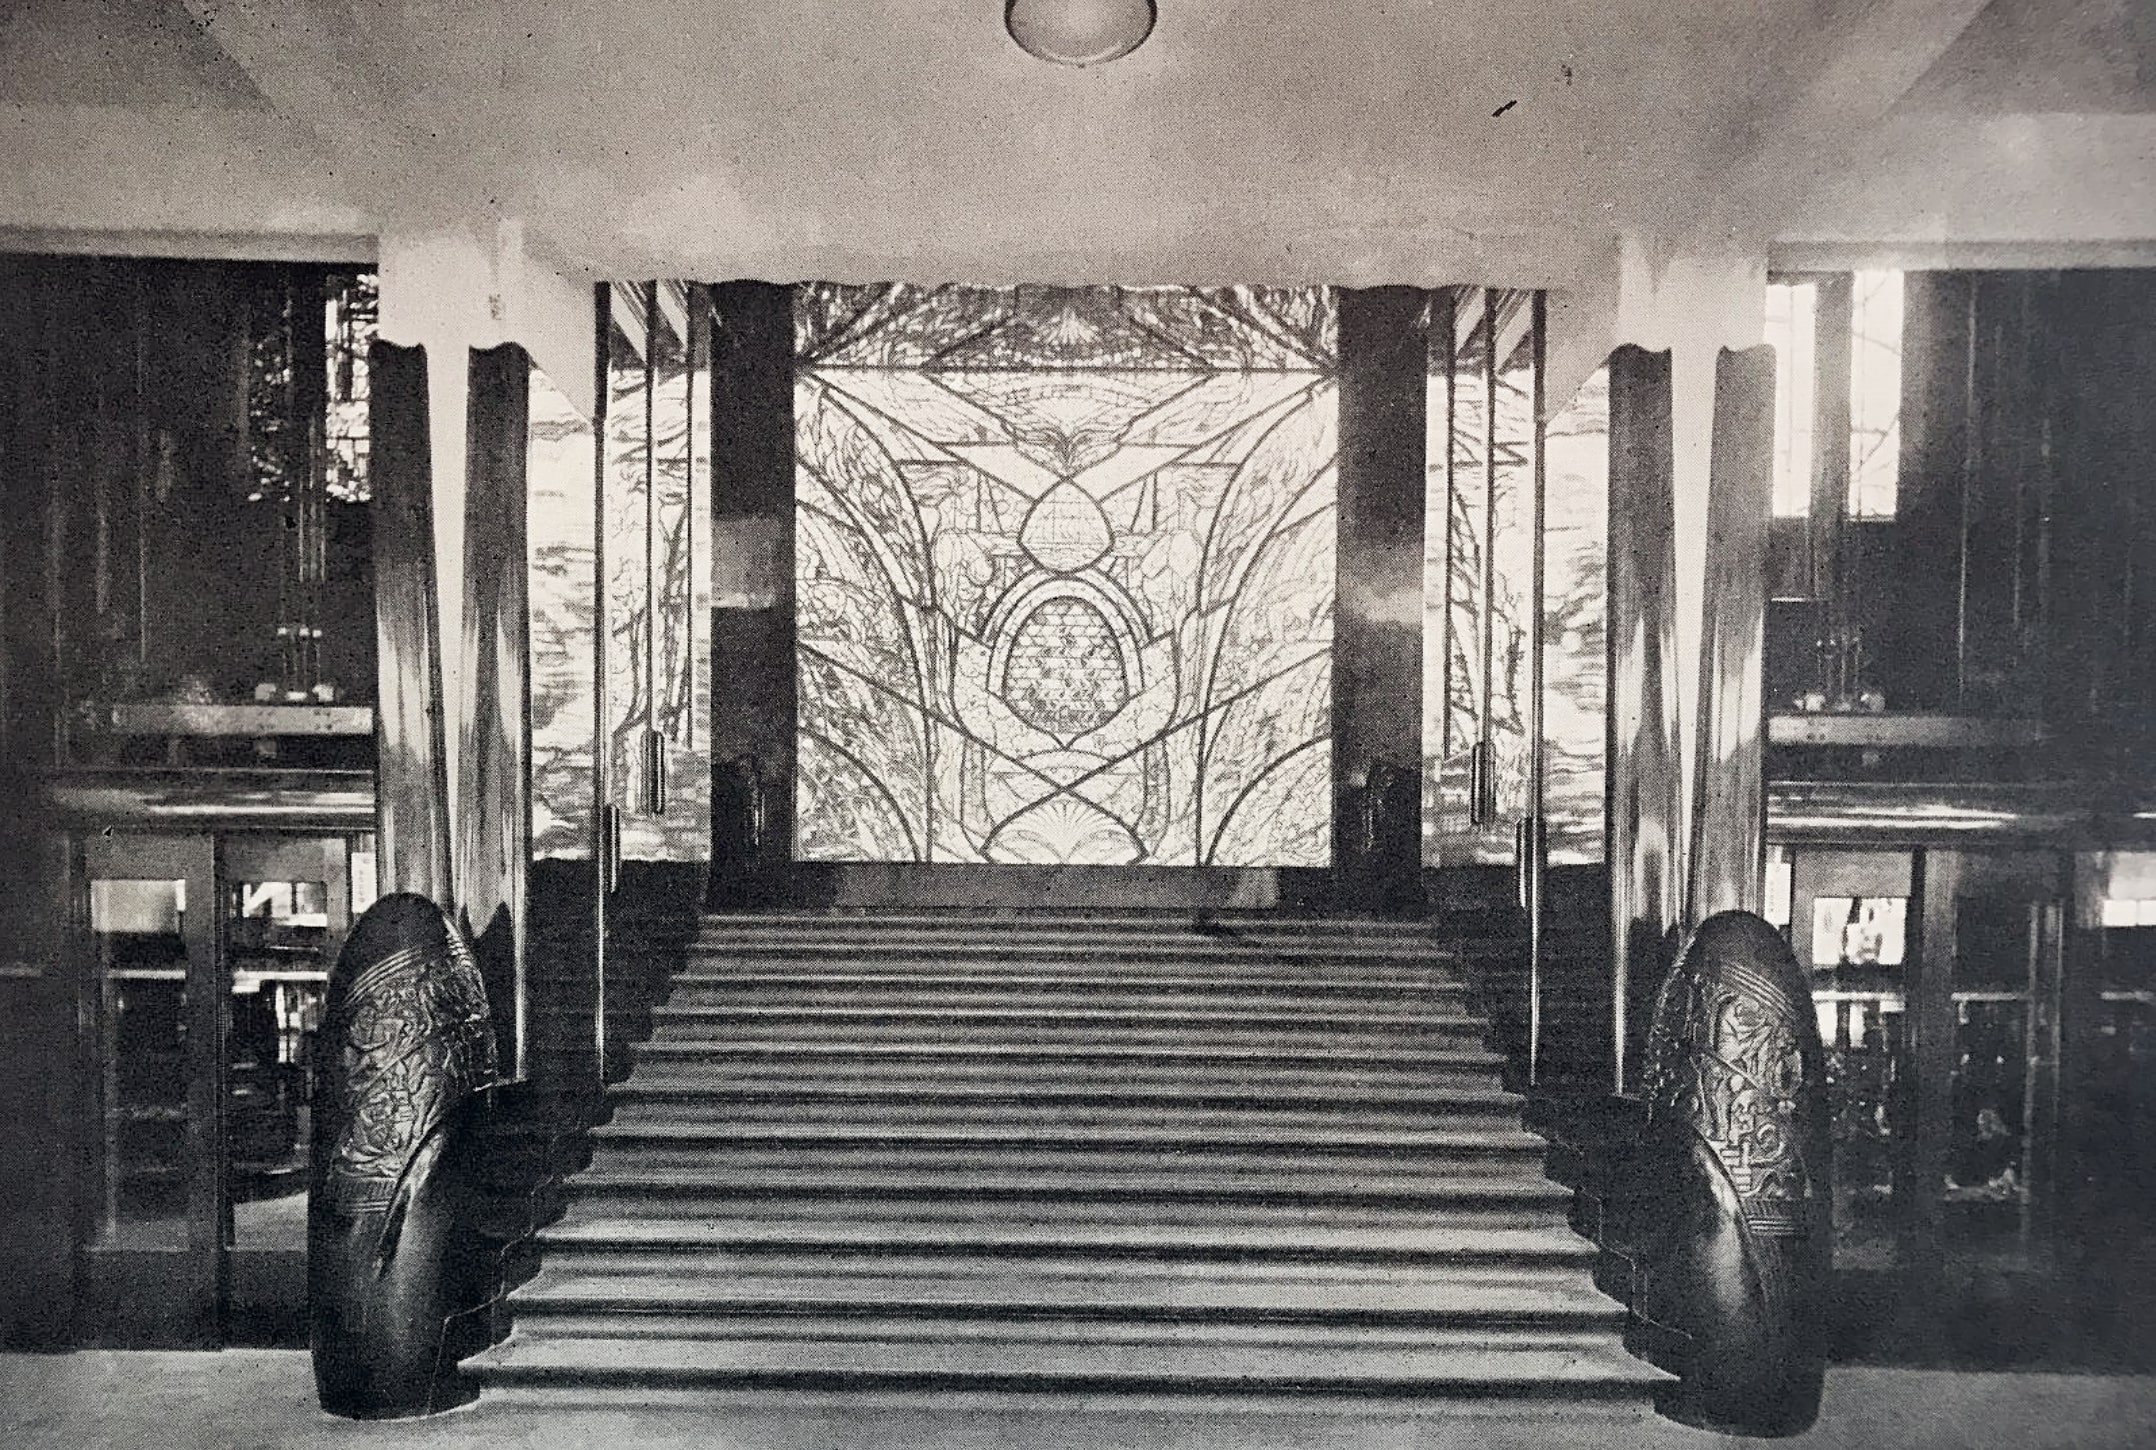 Lépcsőház a hágai áruházban, 1926, archív fotó